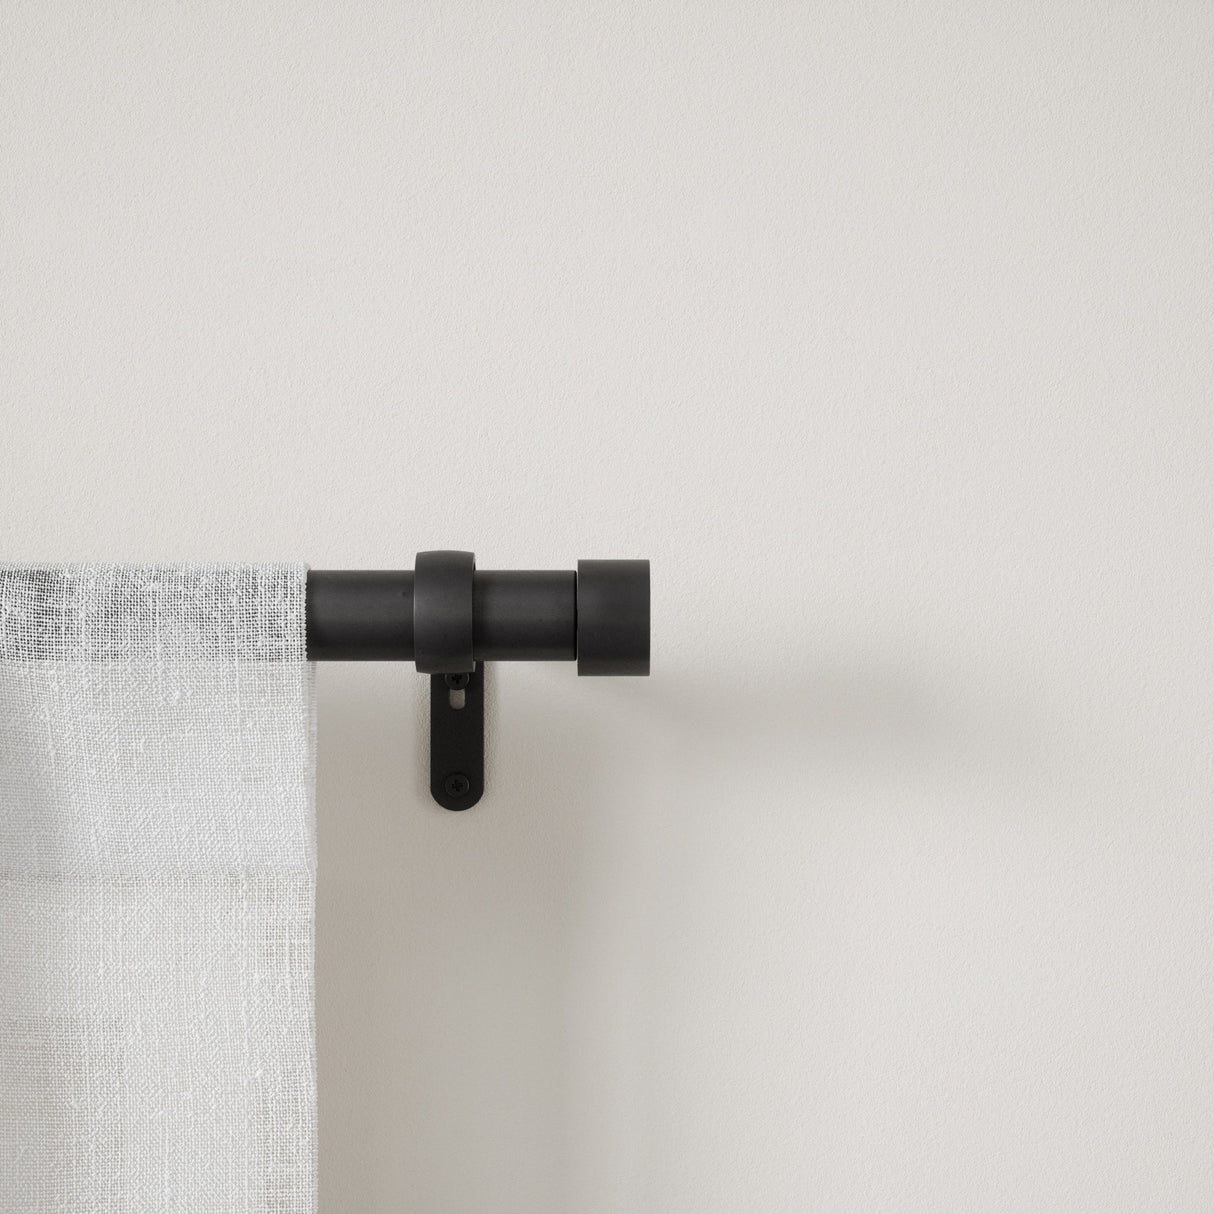 Single Curtain Rods | color: Matte-Black | size: 66-120" (168-305 cm) | diameter: 1" (2.5 cm) | Hover